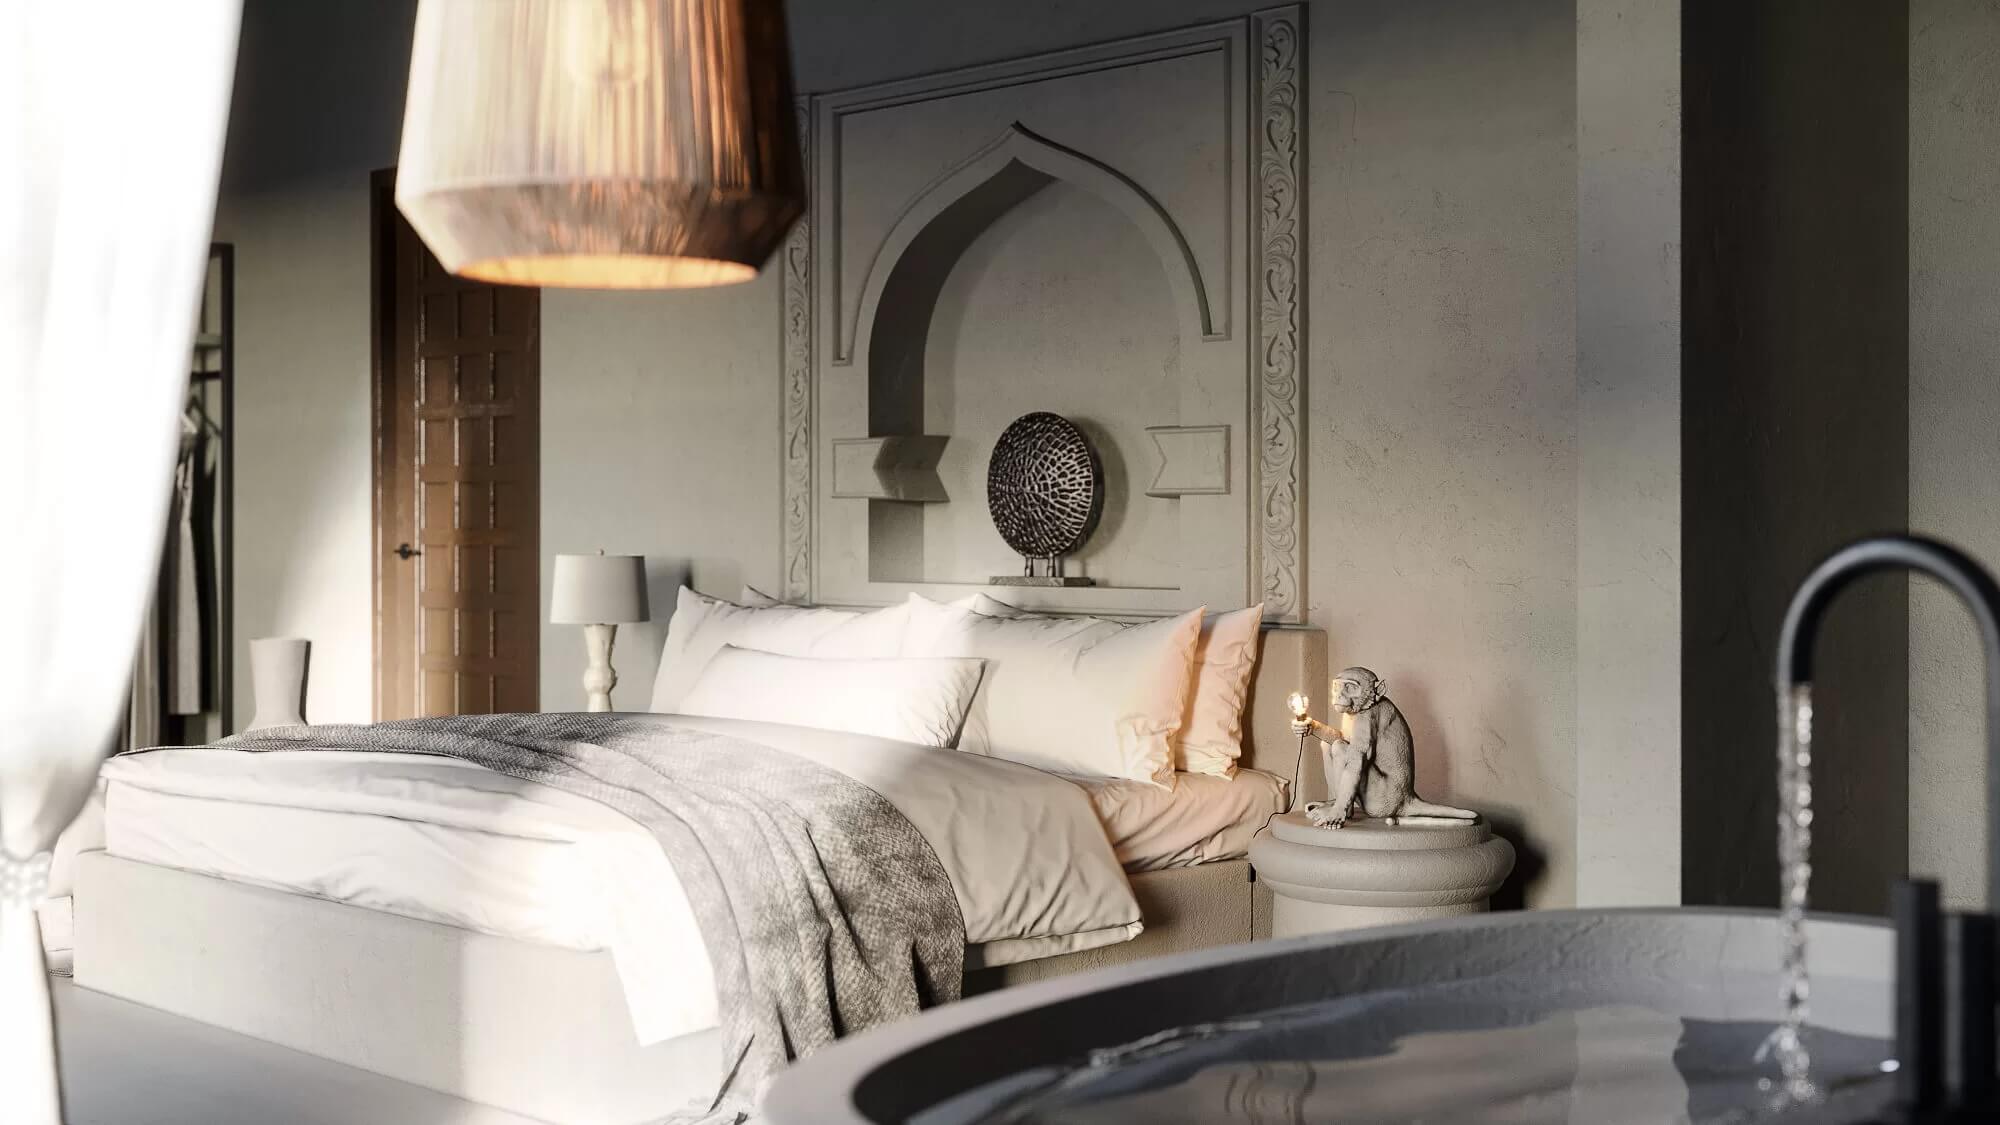 Bedroom Interior 3D Rendering for a Hotel in Zanzibar